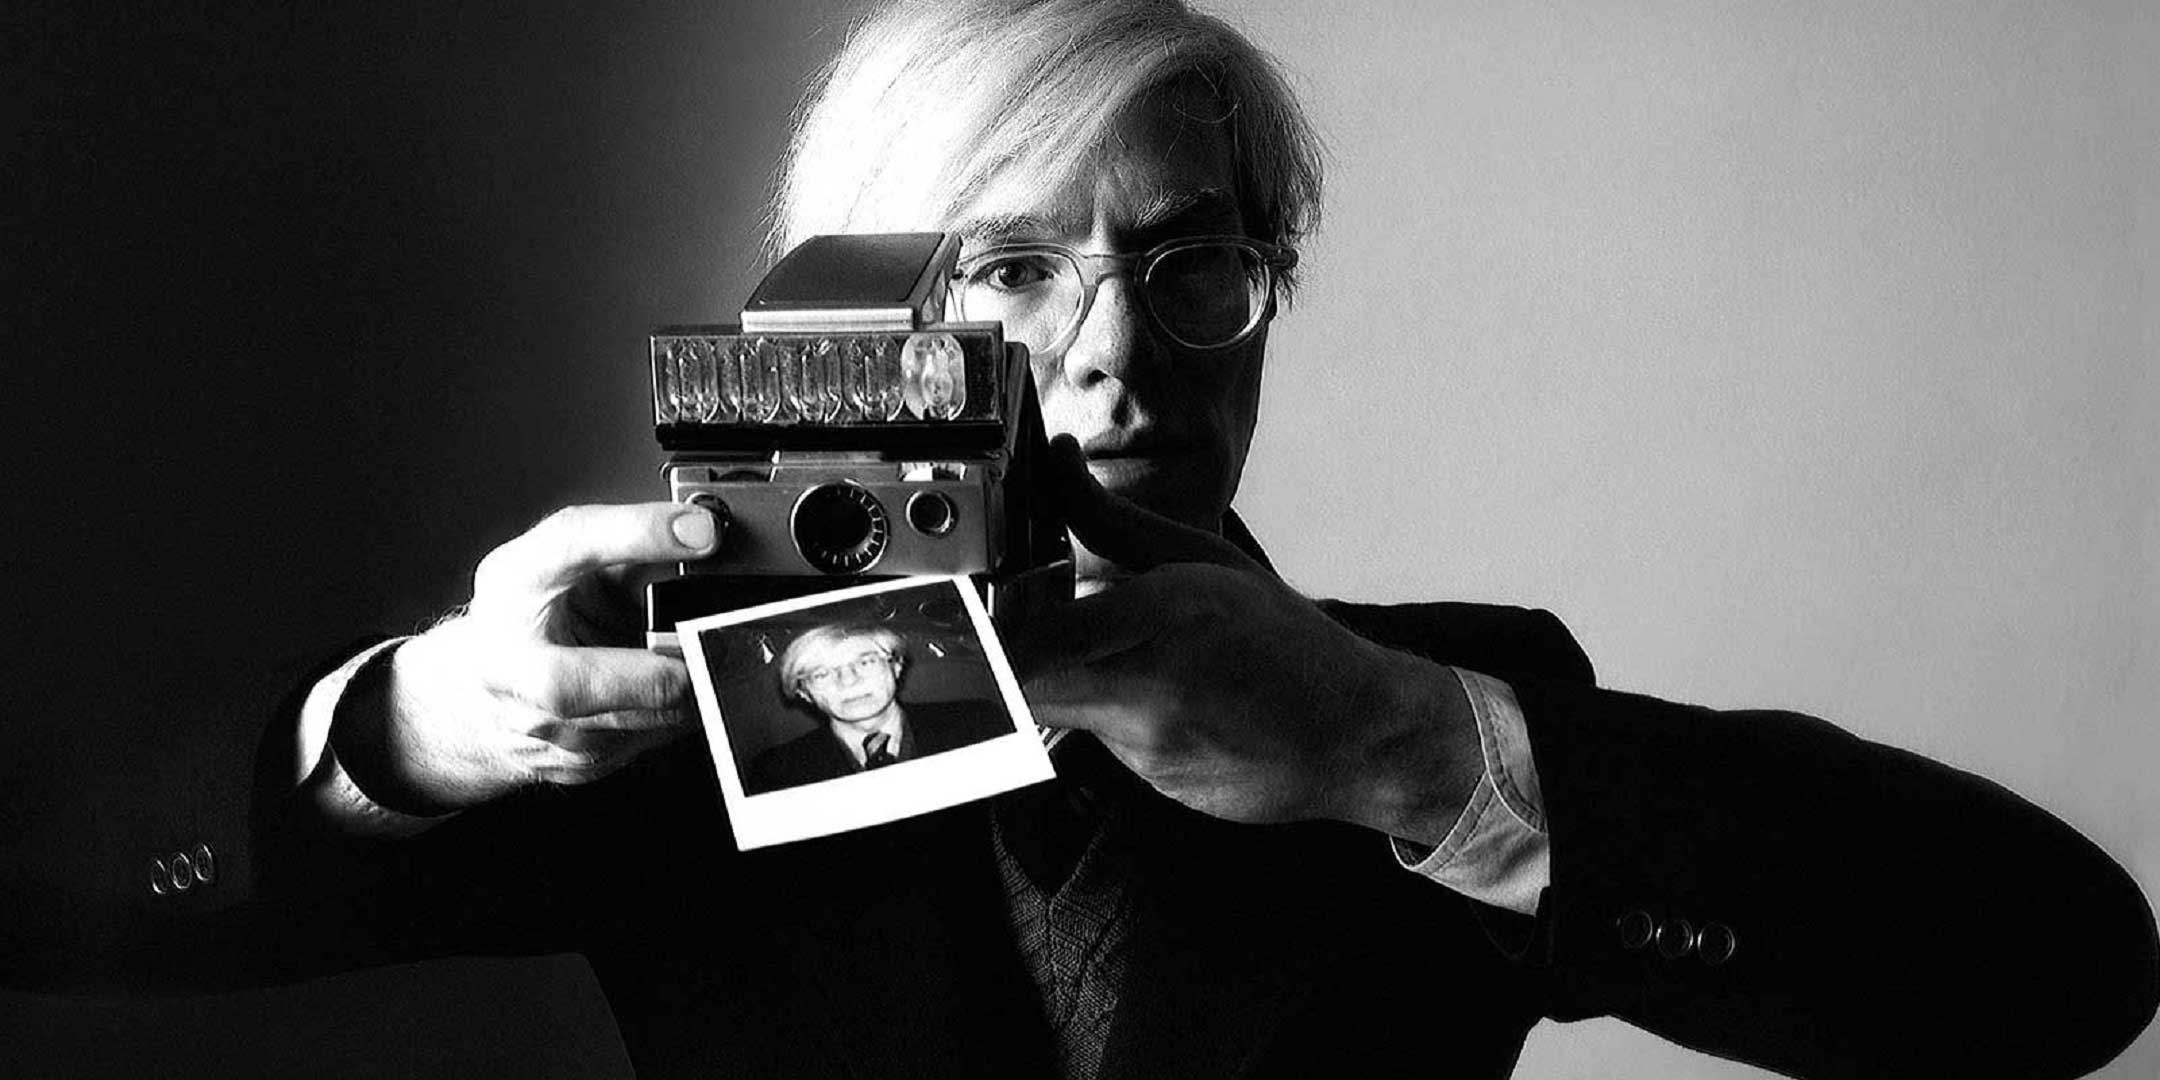 I diari di Andy Warhol